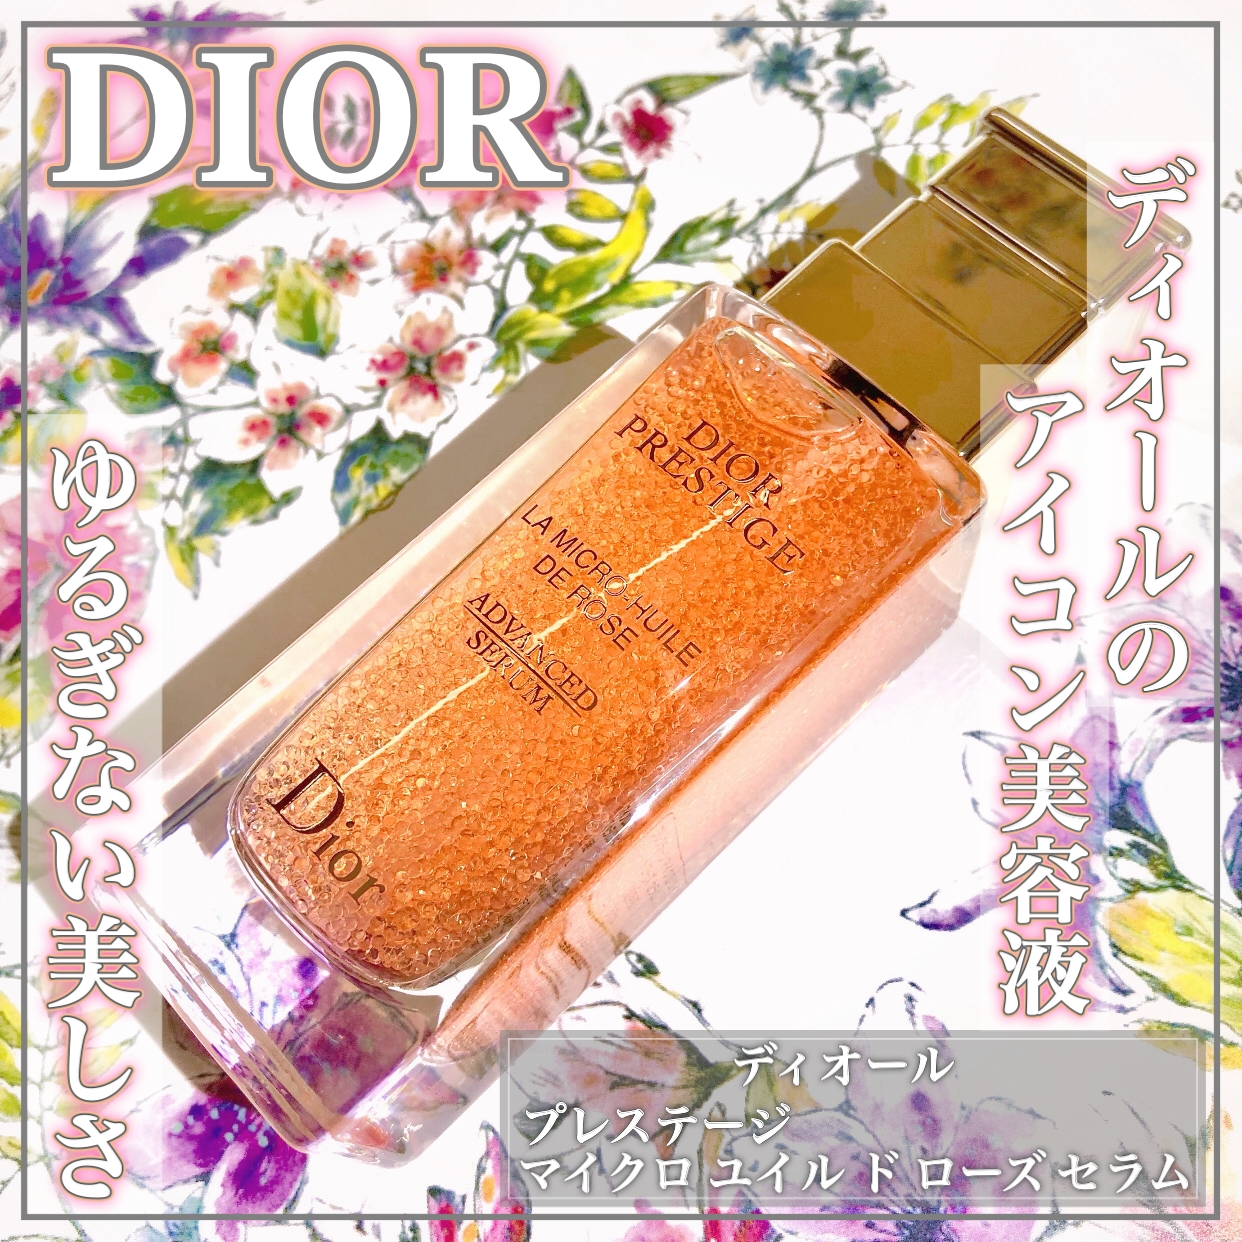 Dior(ディオール) プレステージ マイクロ ユイル ド ローズ セラムの良い点・メリットに関するEririnさんの口コミ画像1